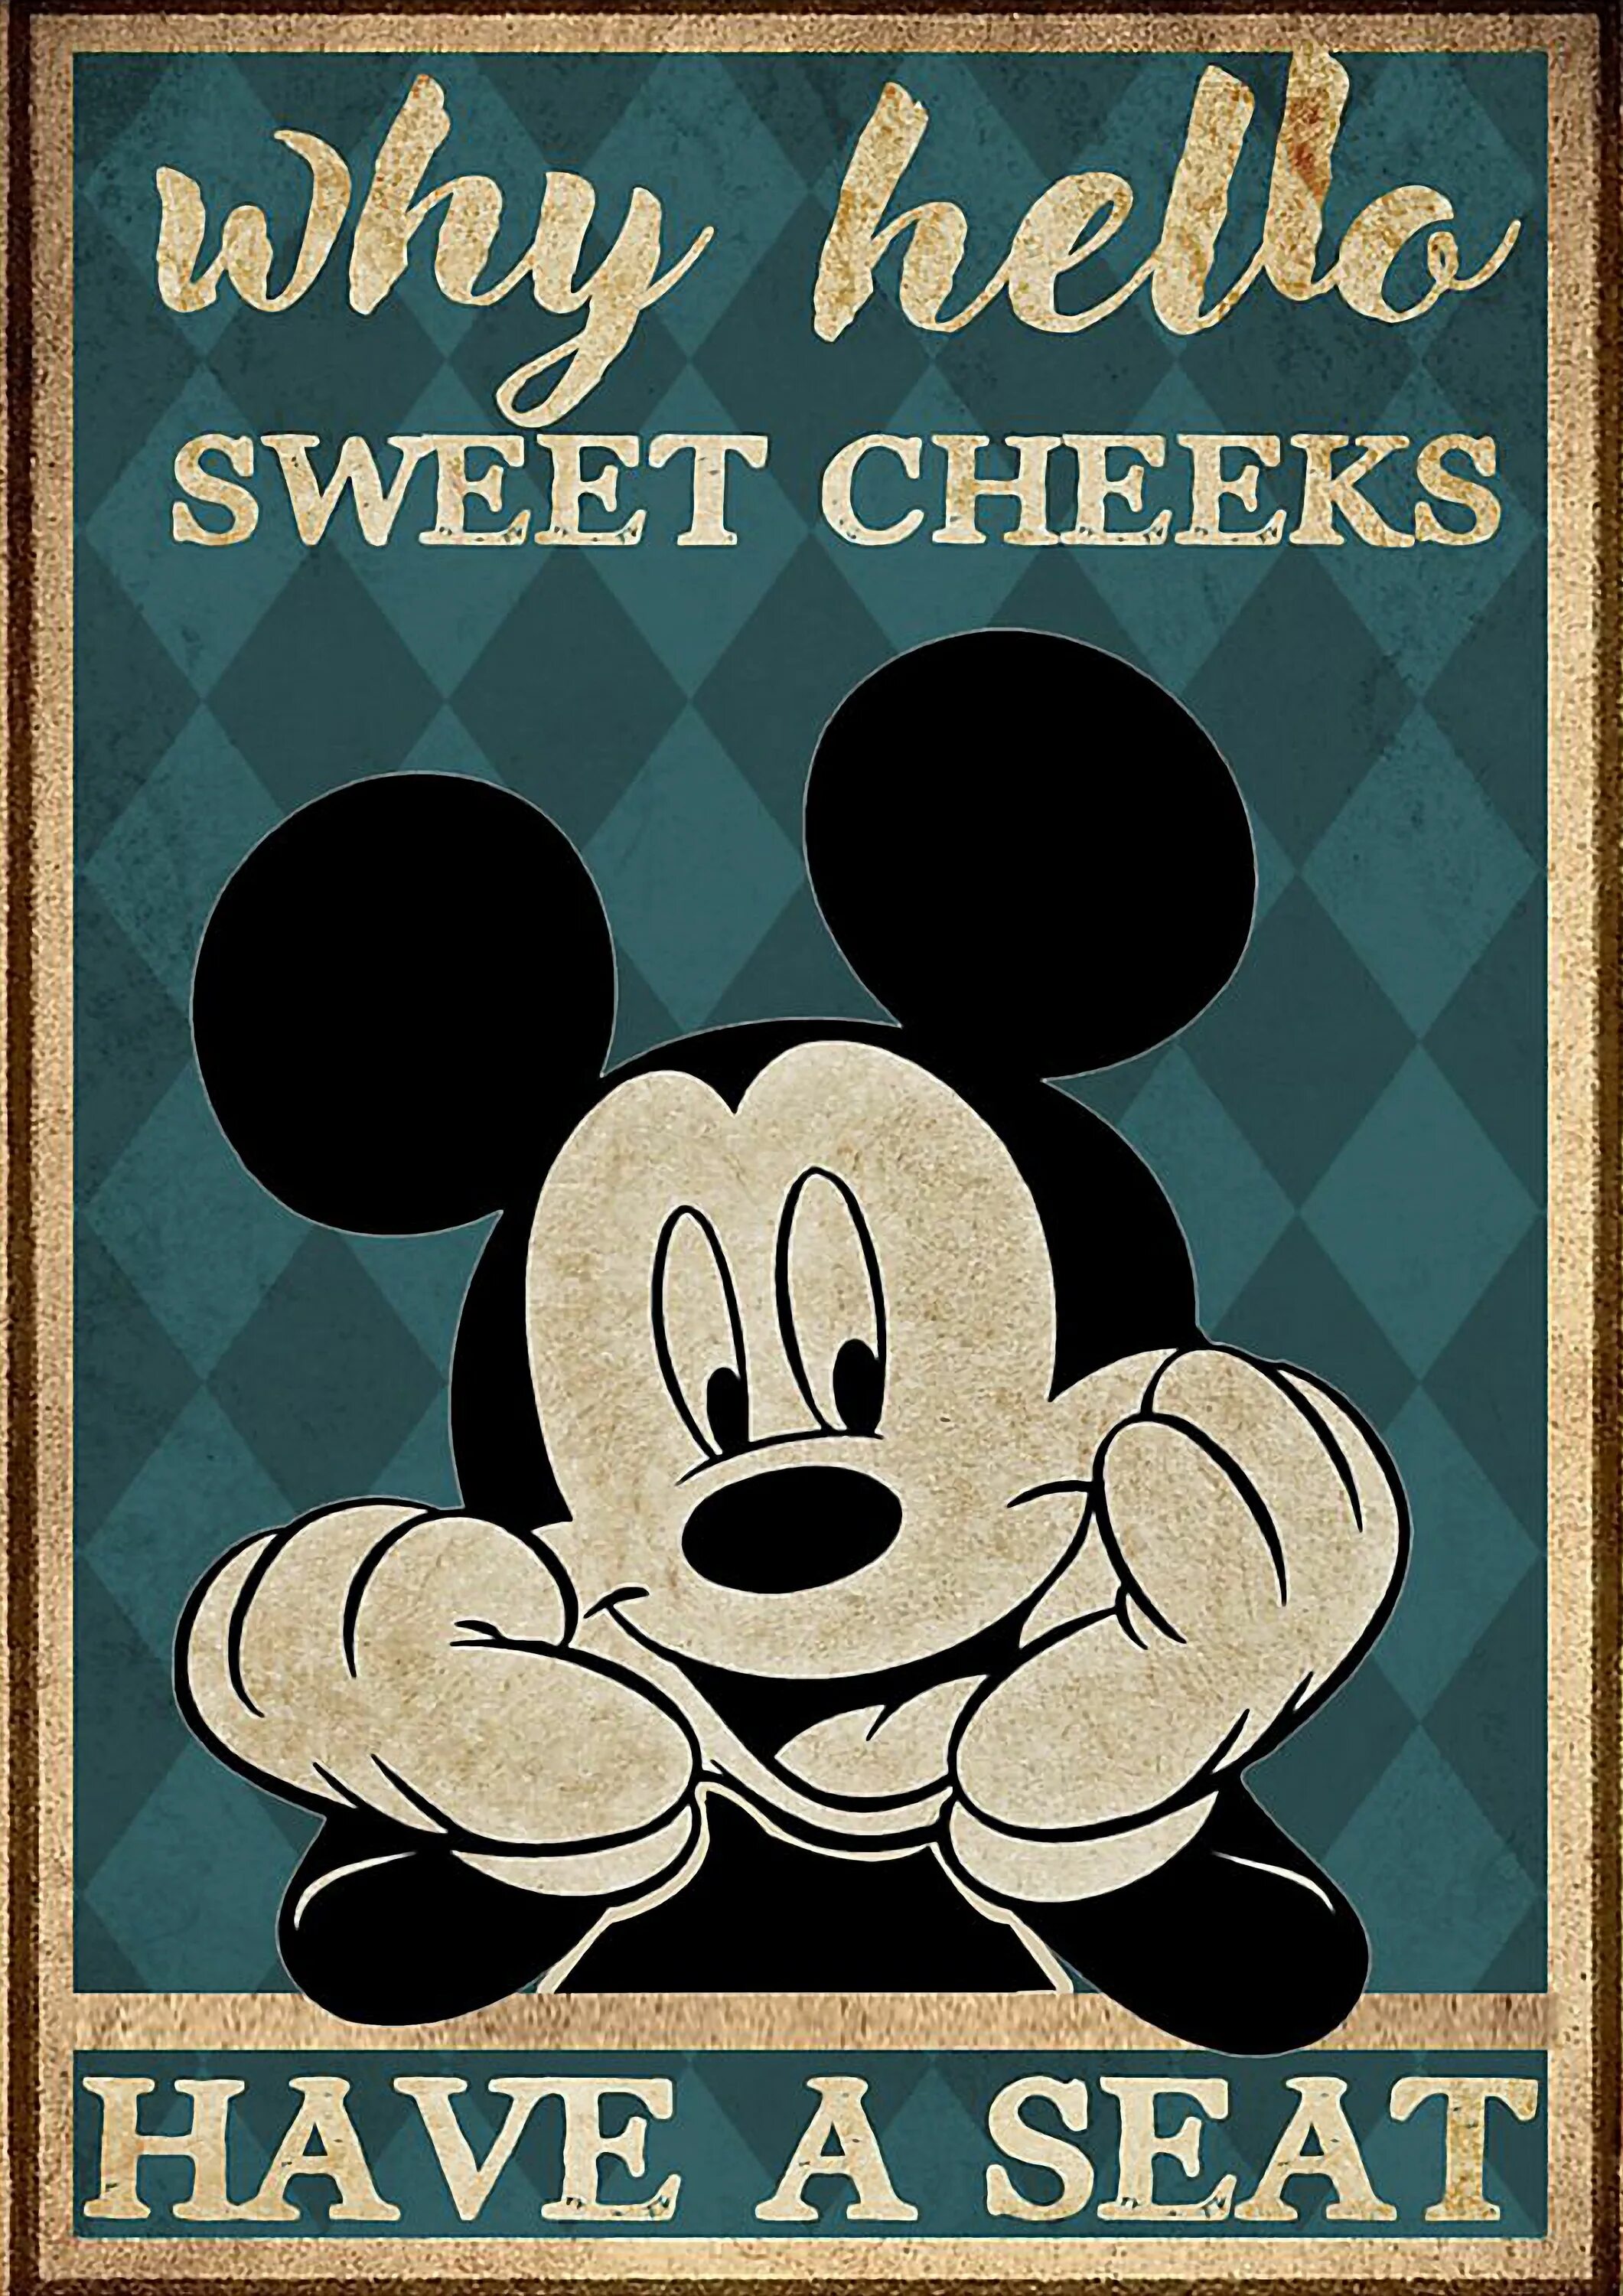 Постер "Микки Маус". Микки Маус плакат. Постер с Микки Маусом. Постер Микки Маус Винтаж. Почему хеллоу